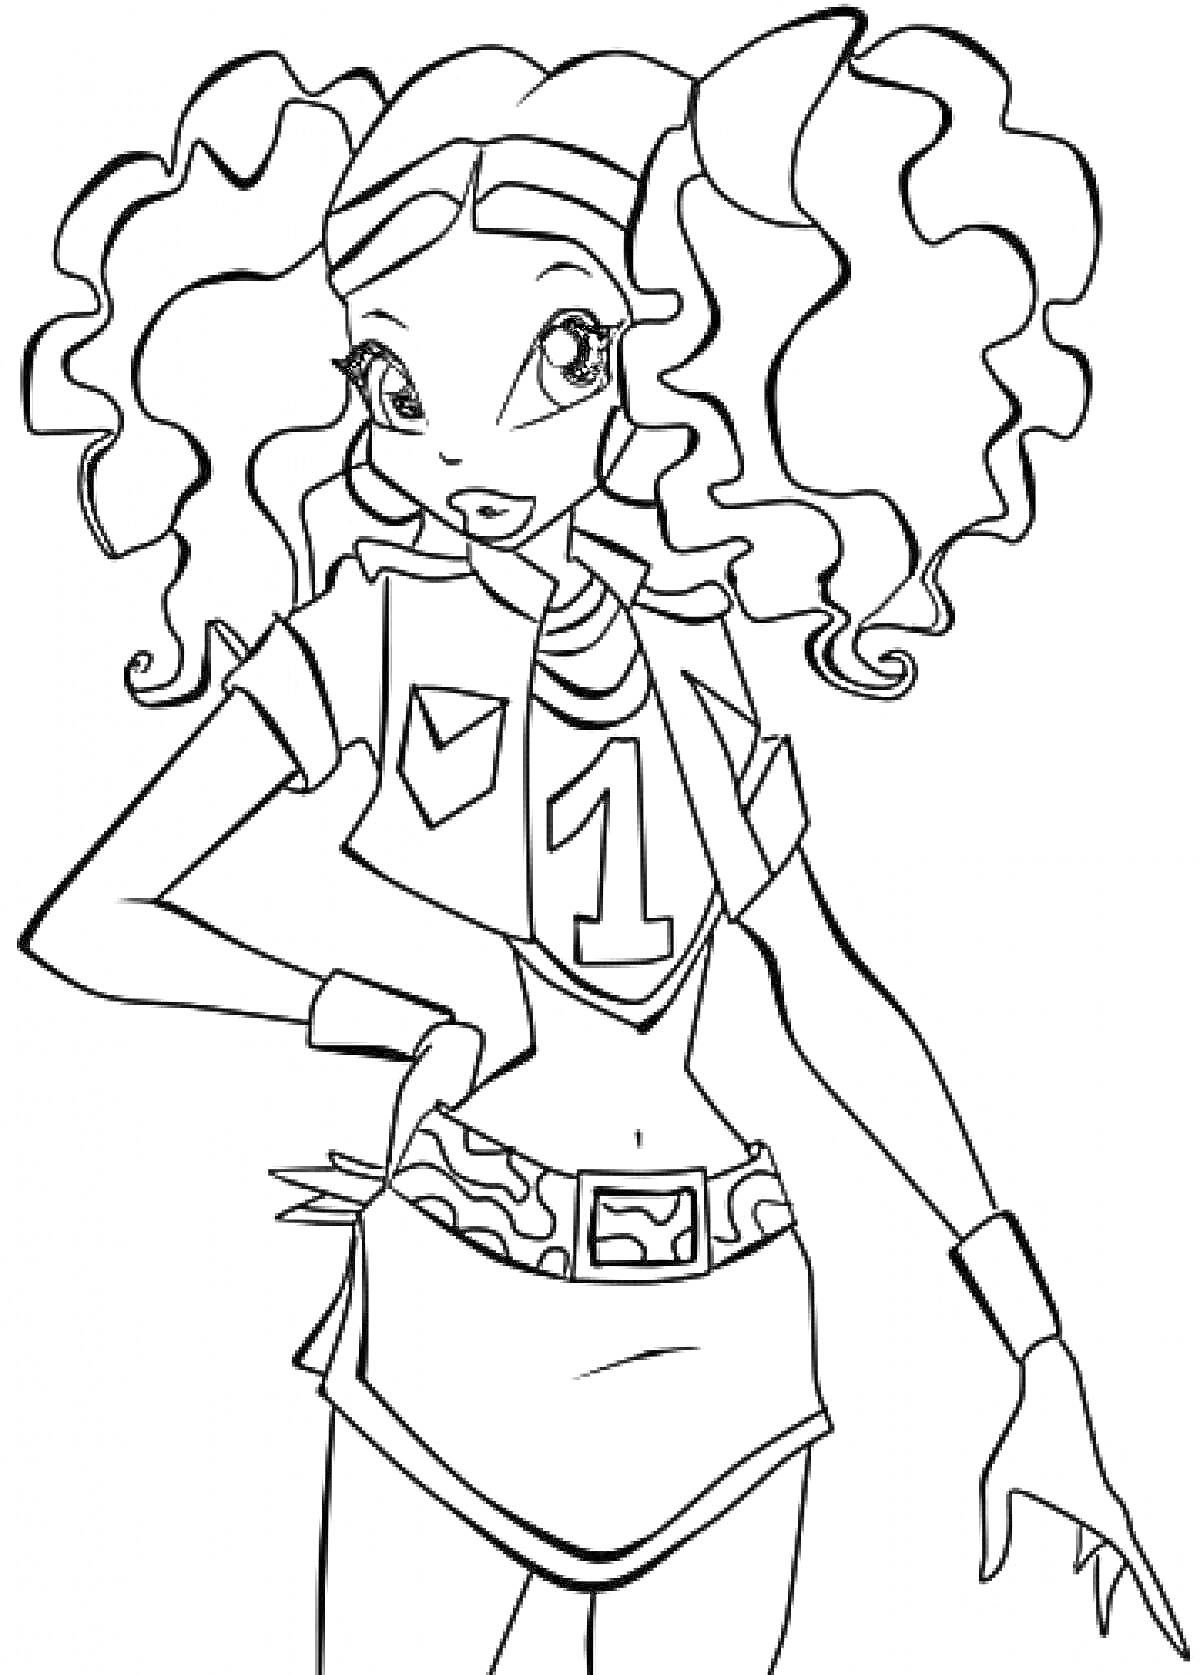 Раскраска Лейла из Винкс с волнистыми волосами, в футболке с номером 1 и юбкой